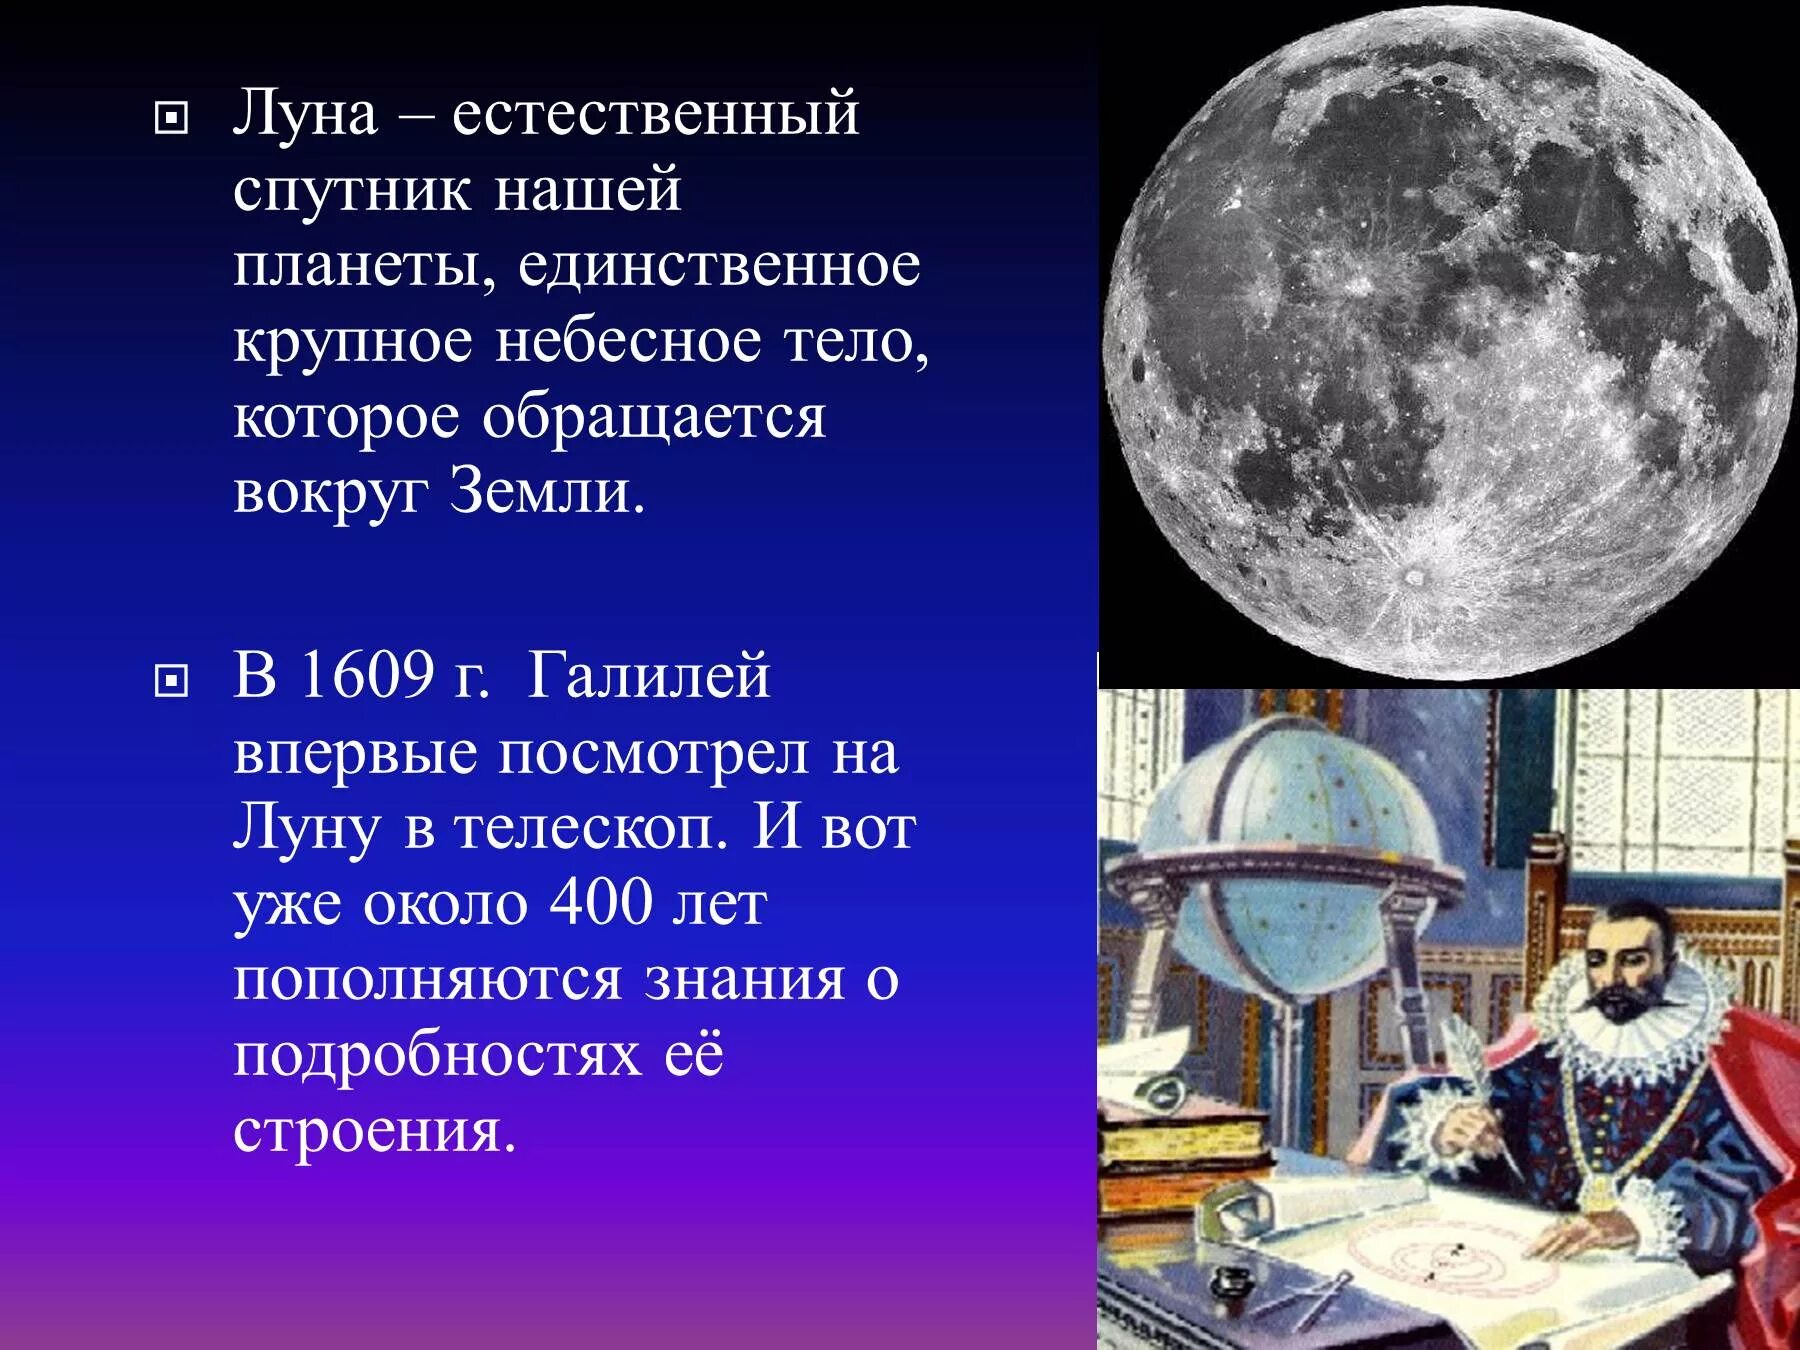 Луна естественный Спутник земли. Луна для презентации. Общие сведения о Луне. Луна единственный естественный Спутник нашей планеты.